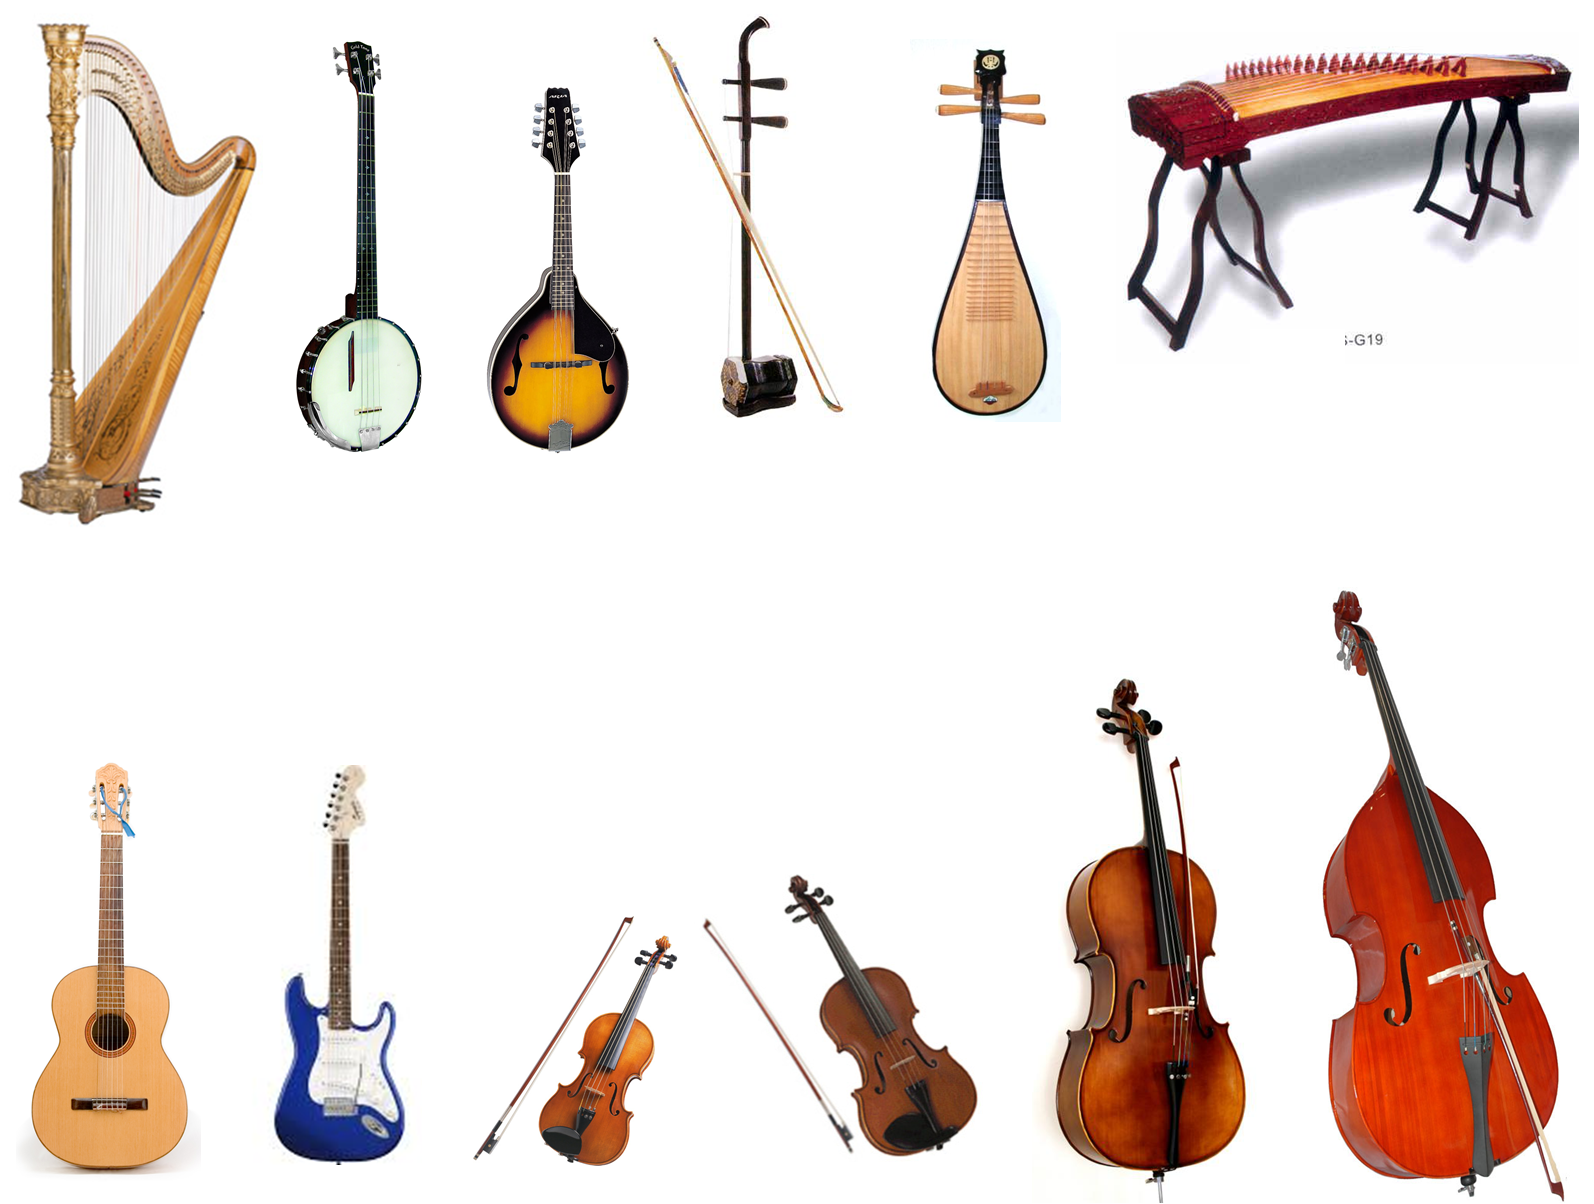 Струнные музыкальные инструменты ответ. Струнные смычковые и Щипковые инструменты. Струнные Щипковые струнные смычковые музыкальные инструменты. Струнно-смычковые музыкальные инструменты названия.